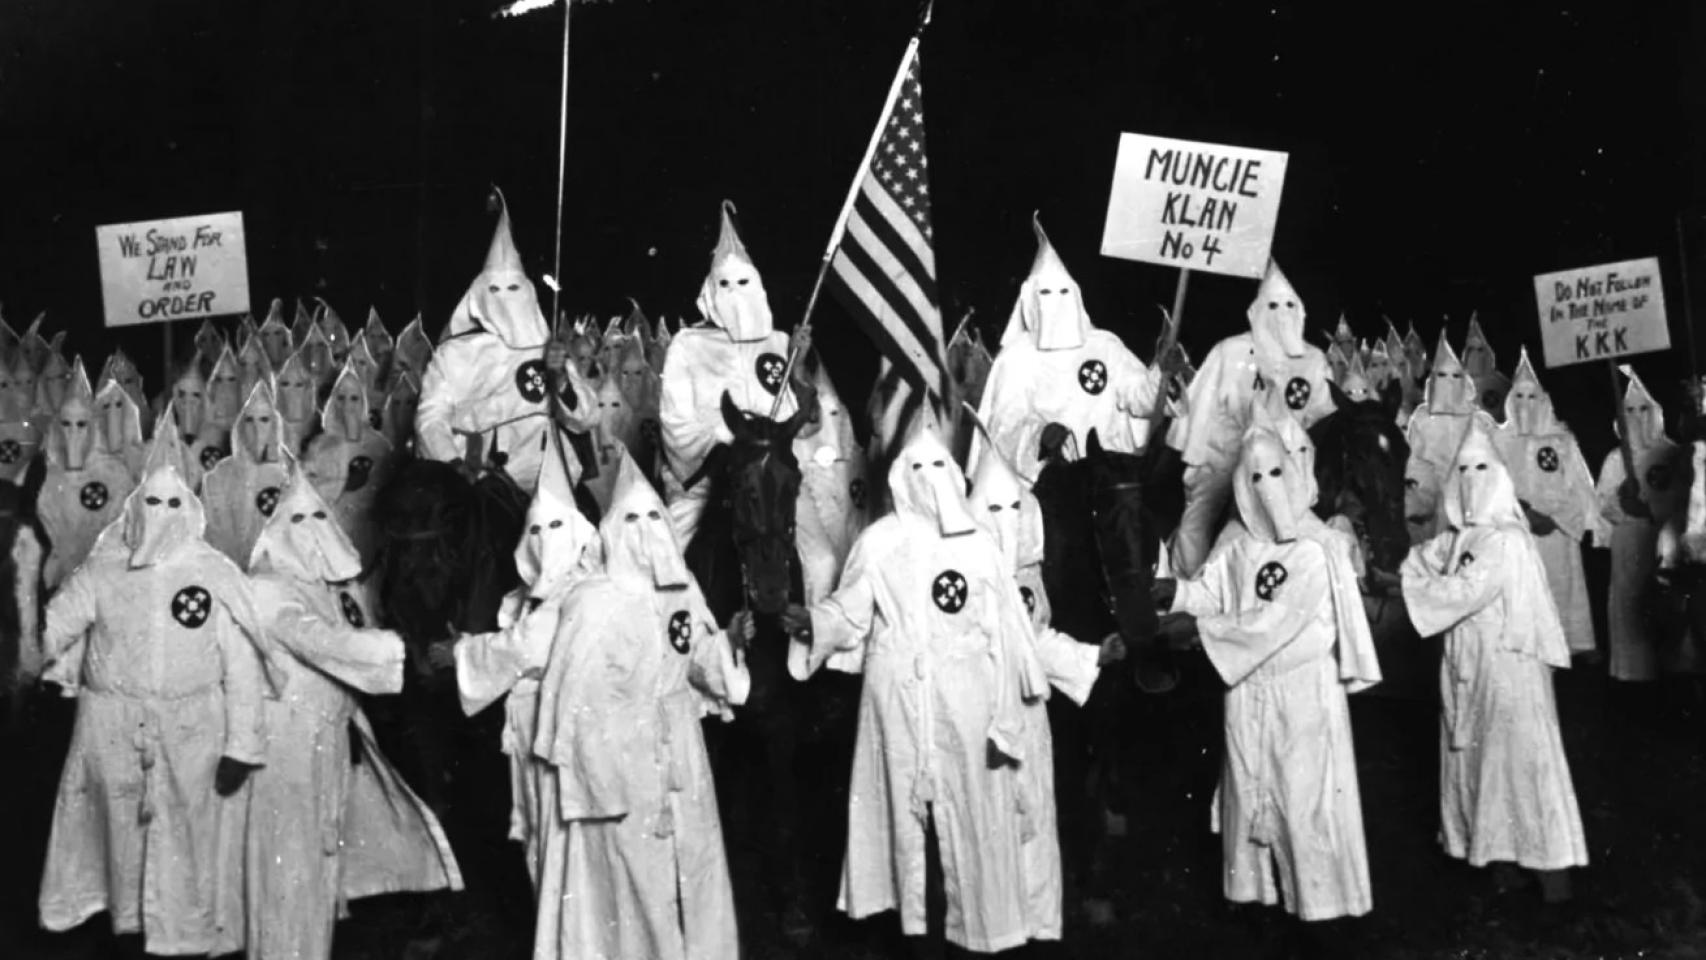 Reunión del Ku Klux Klan en Munice (Indiana) en 1922.